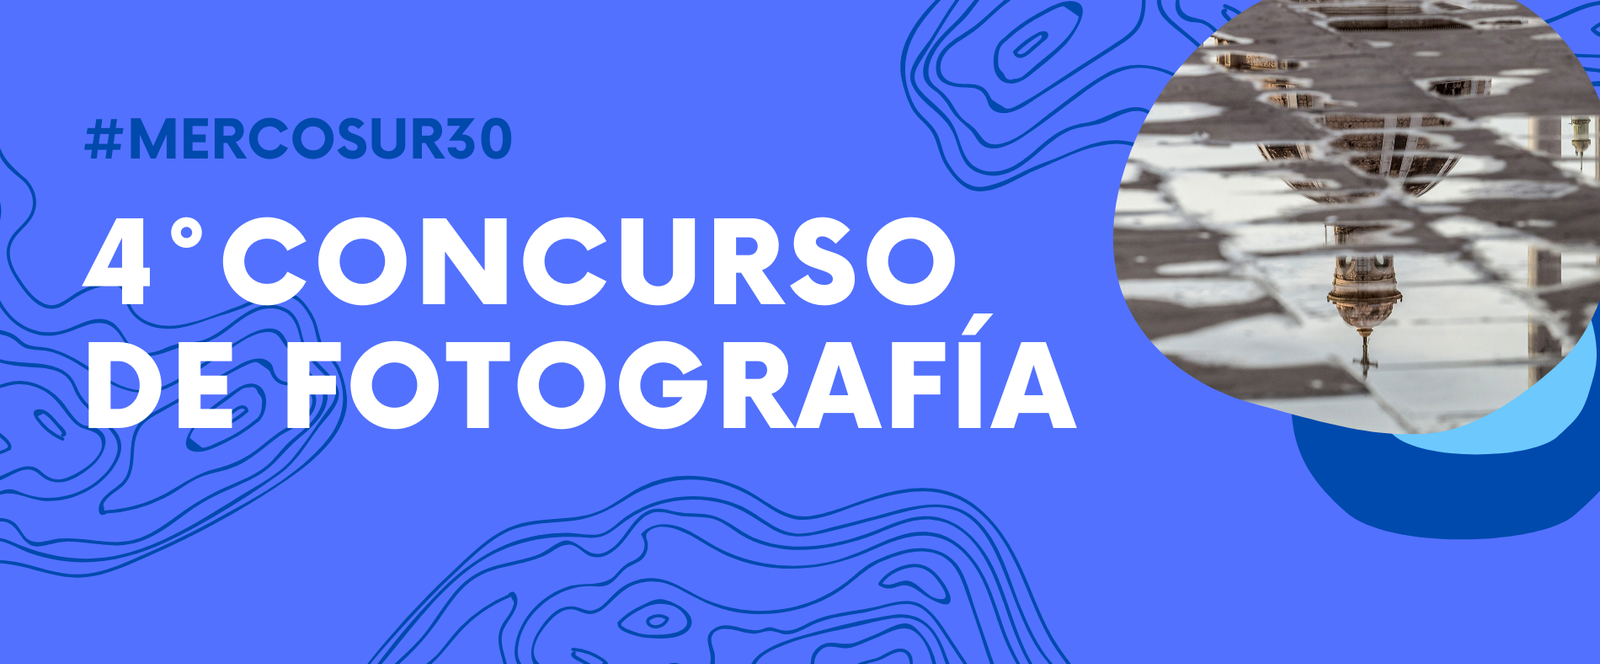 Concurso fotografía mercosur